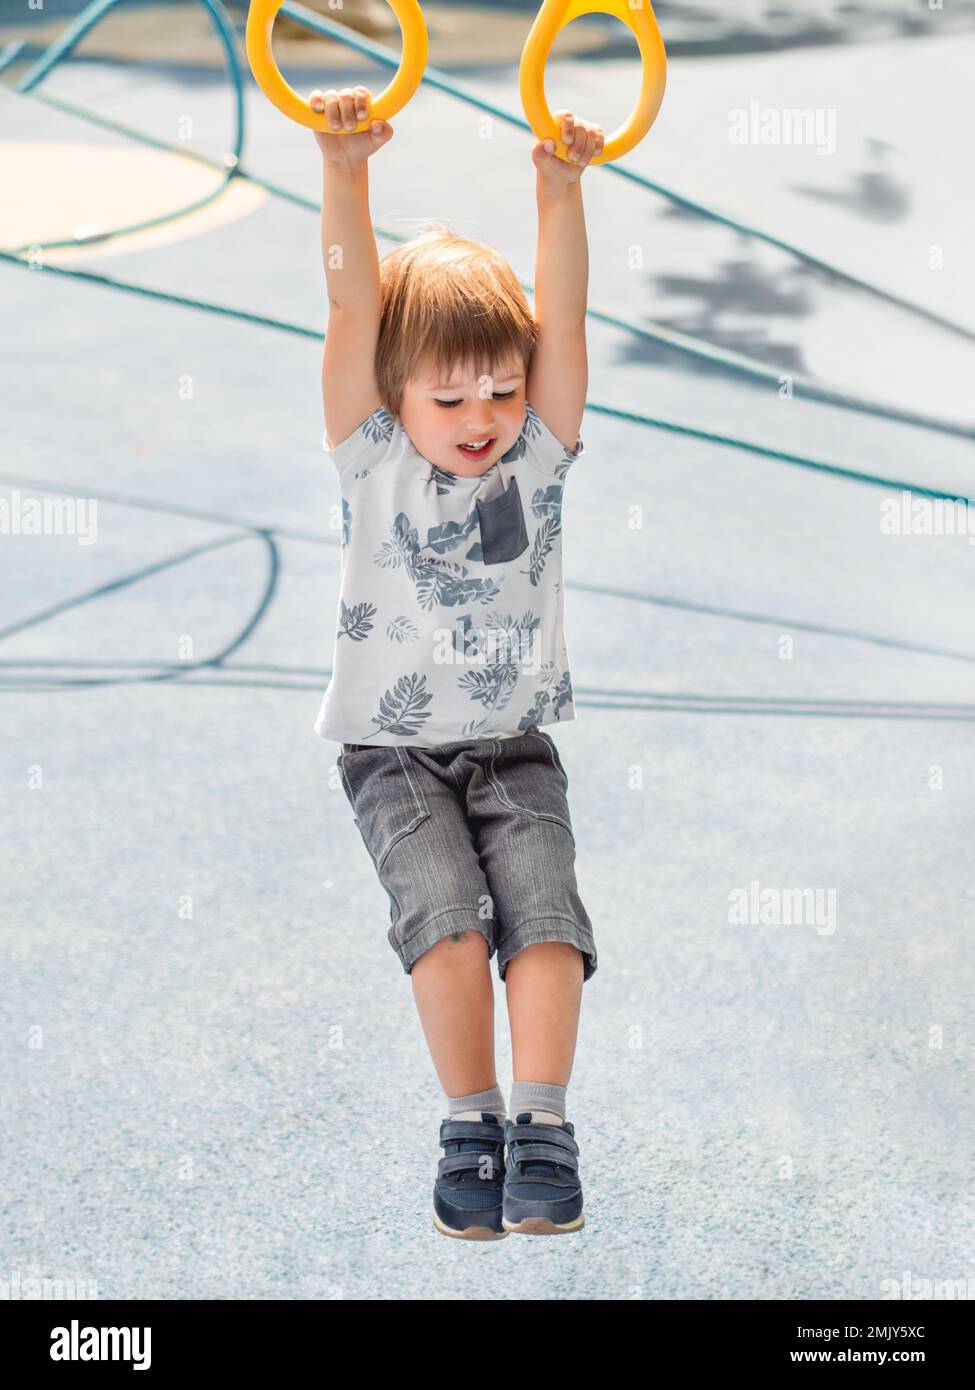 Der kleine Junge trainiert auf dem öffentlichen Sportgelände mit blauem Pflaster. Der Junge macht Übungen an Sportringen. Aktive Freizeitaktivitäten im Freien. Stockfoto